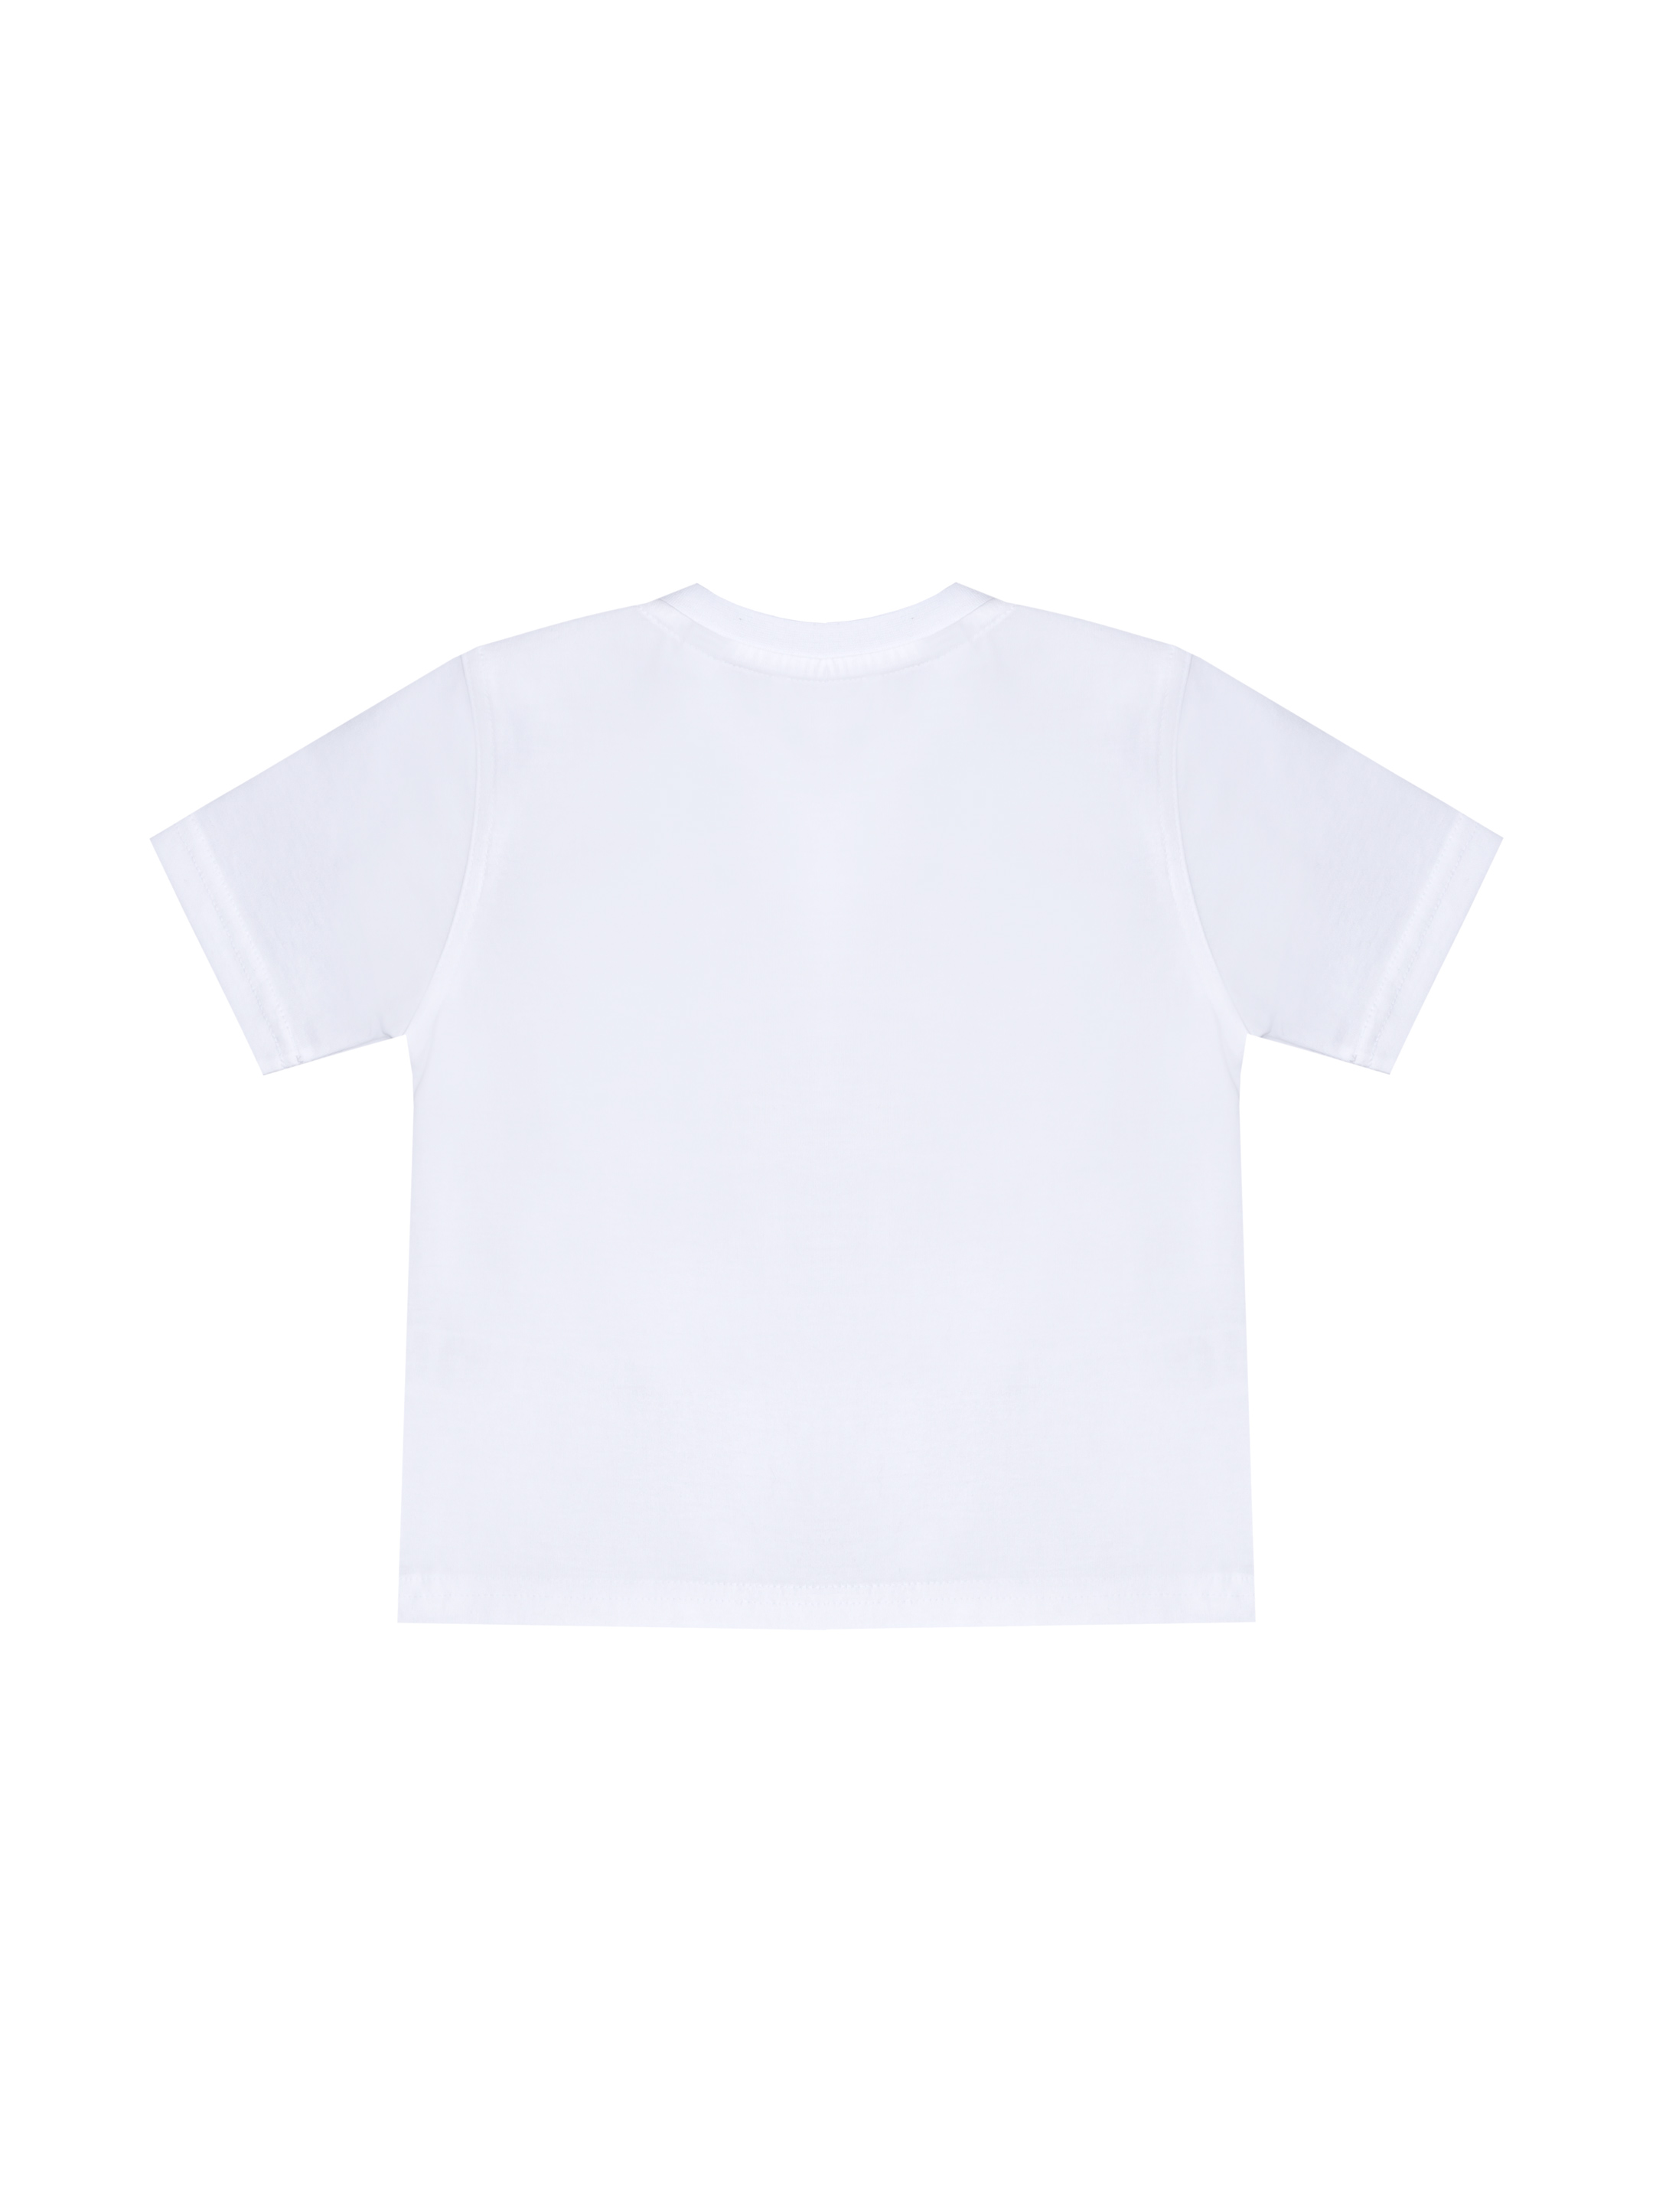 Белая детская футболка купить. "Детская белая футболка". Футболка детская белая однотонная. Белые футболки детские. Беллое футболка.